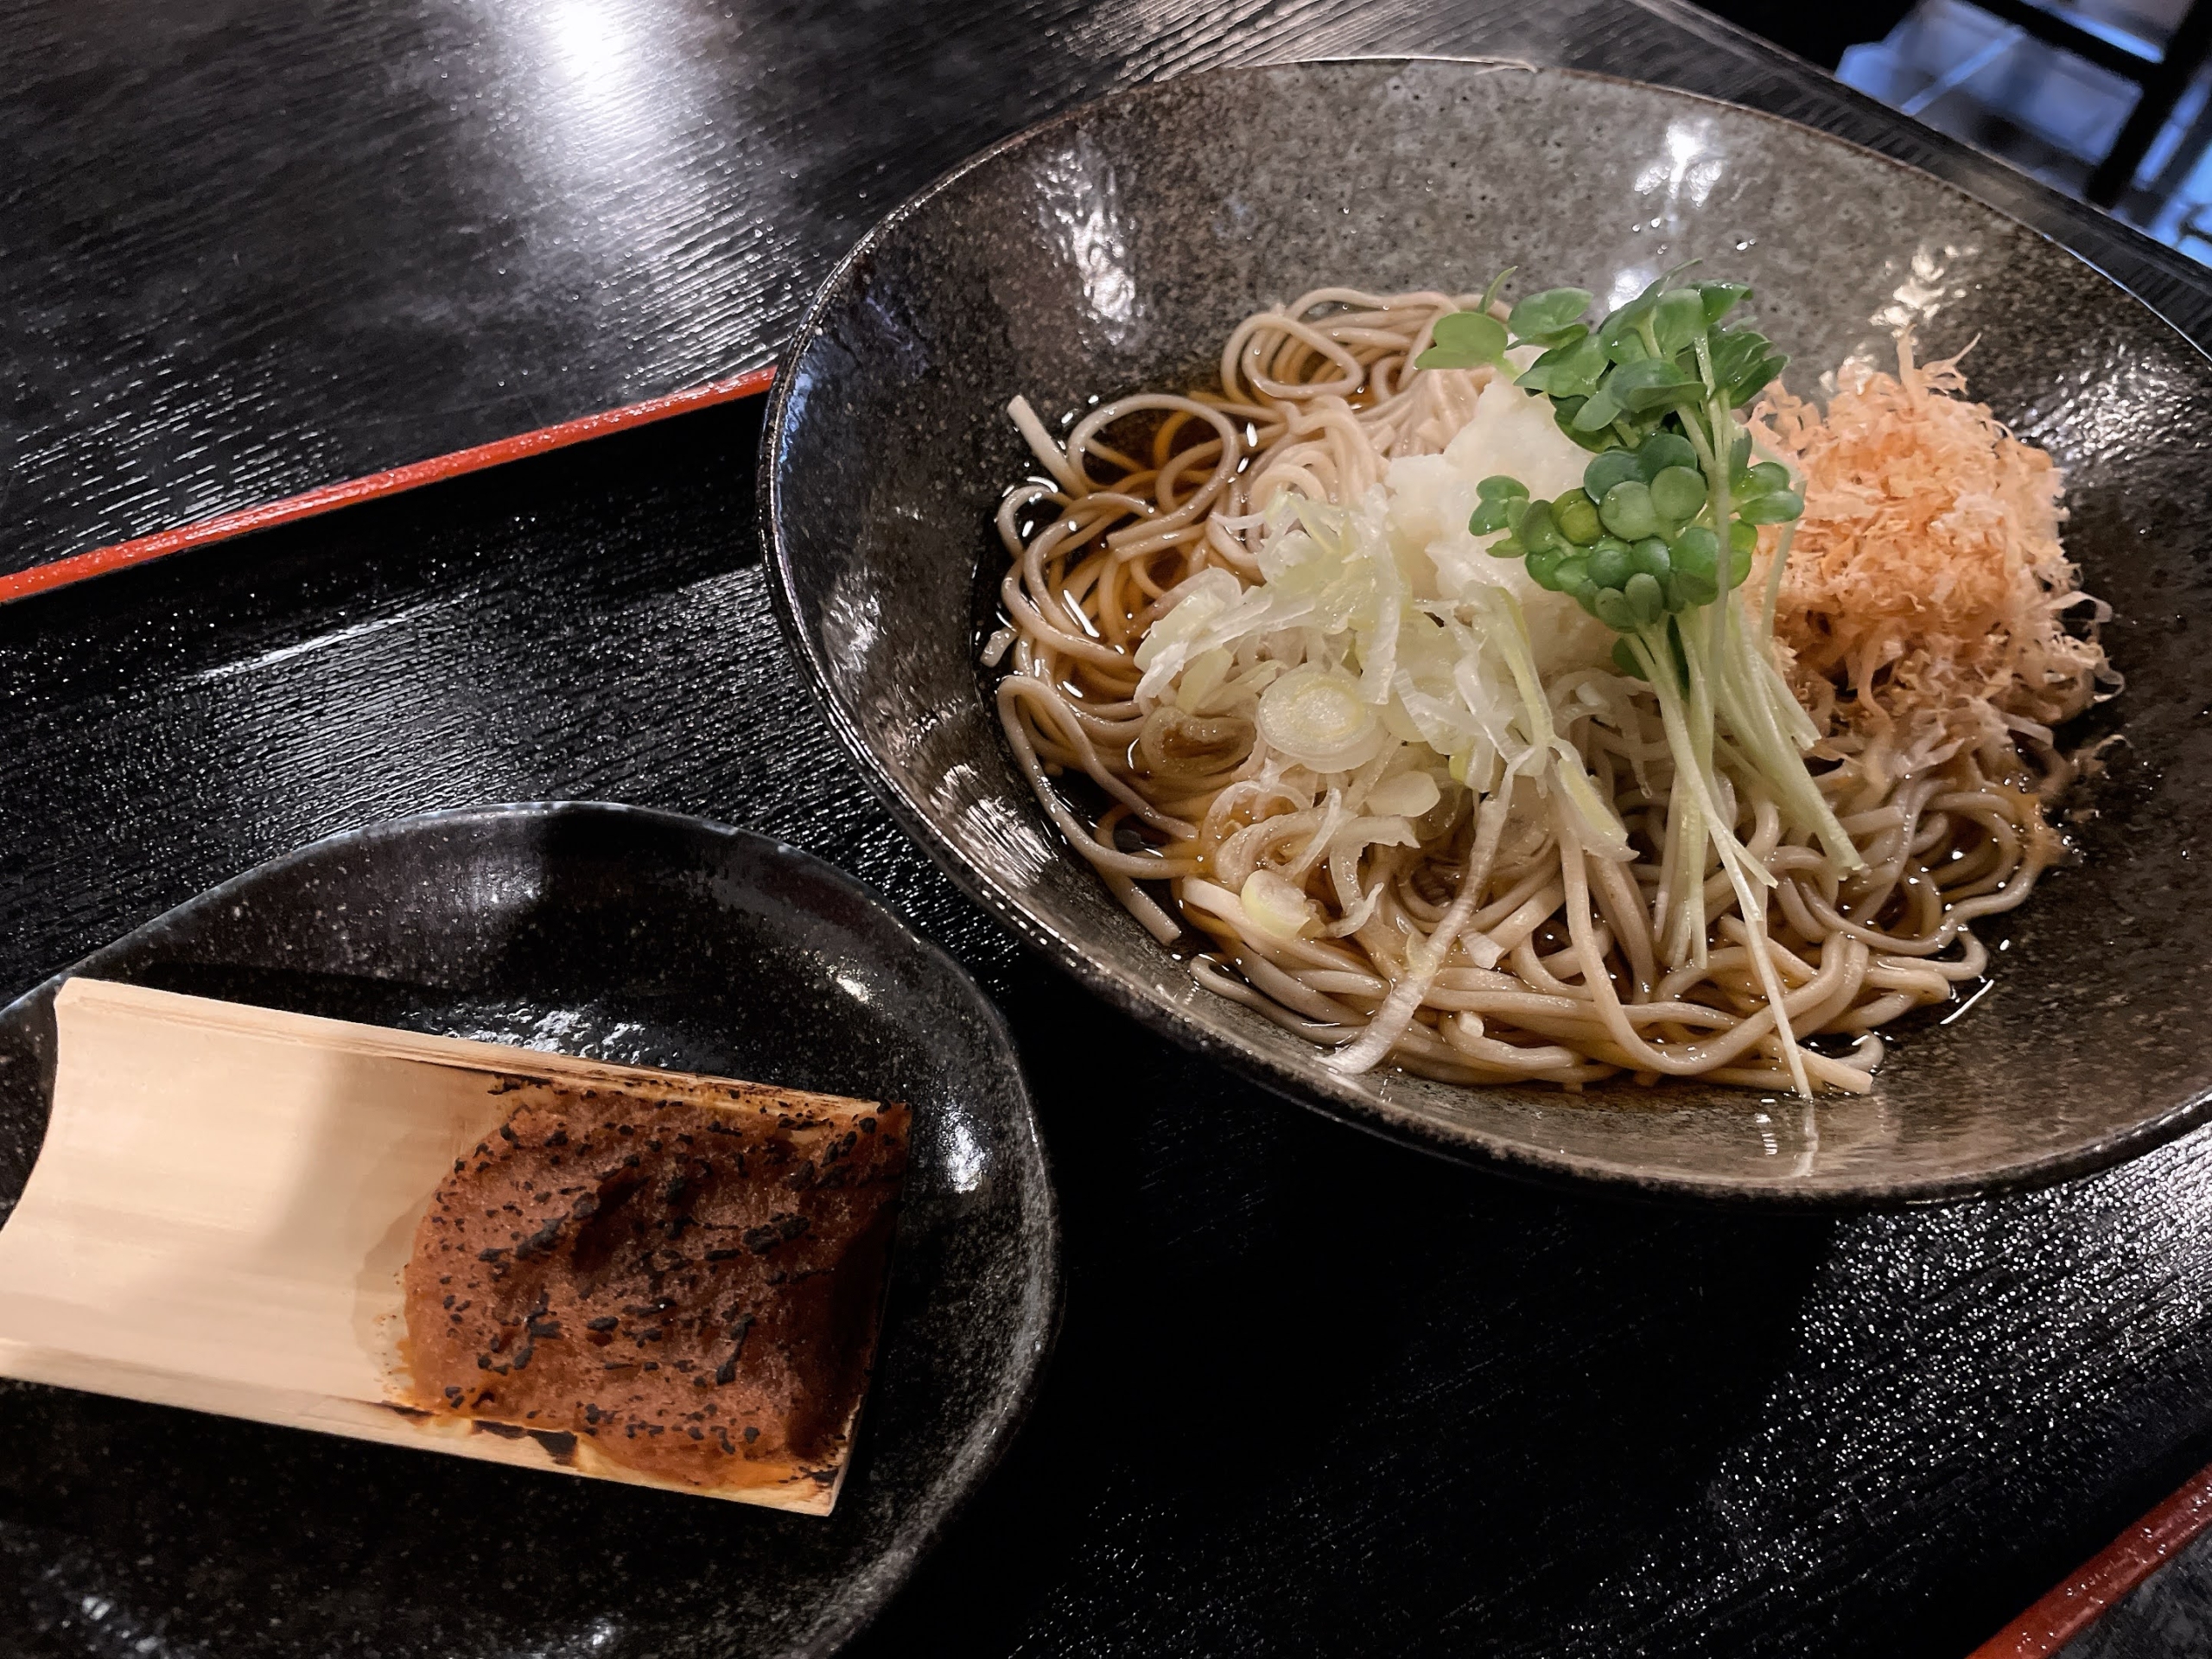 信州諏訪の「おしなそば」信州の伝統野菜 上野大根と諏訪のお味噌で